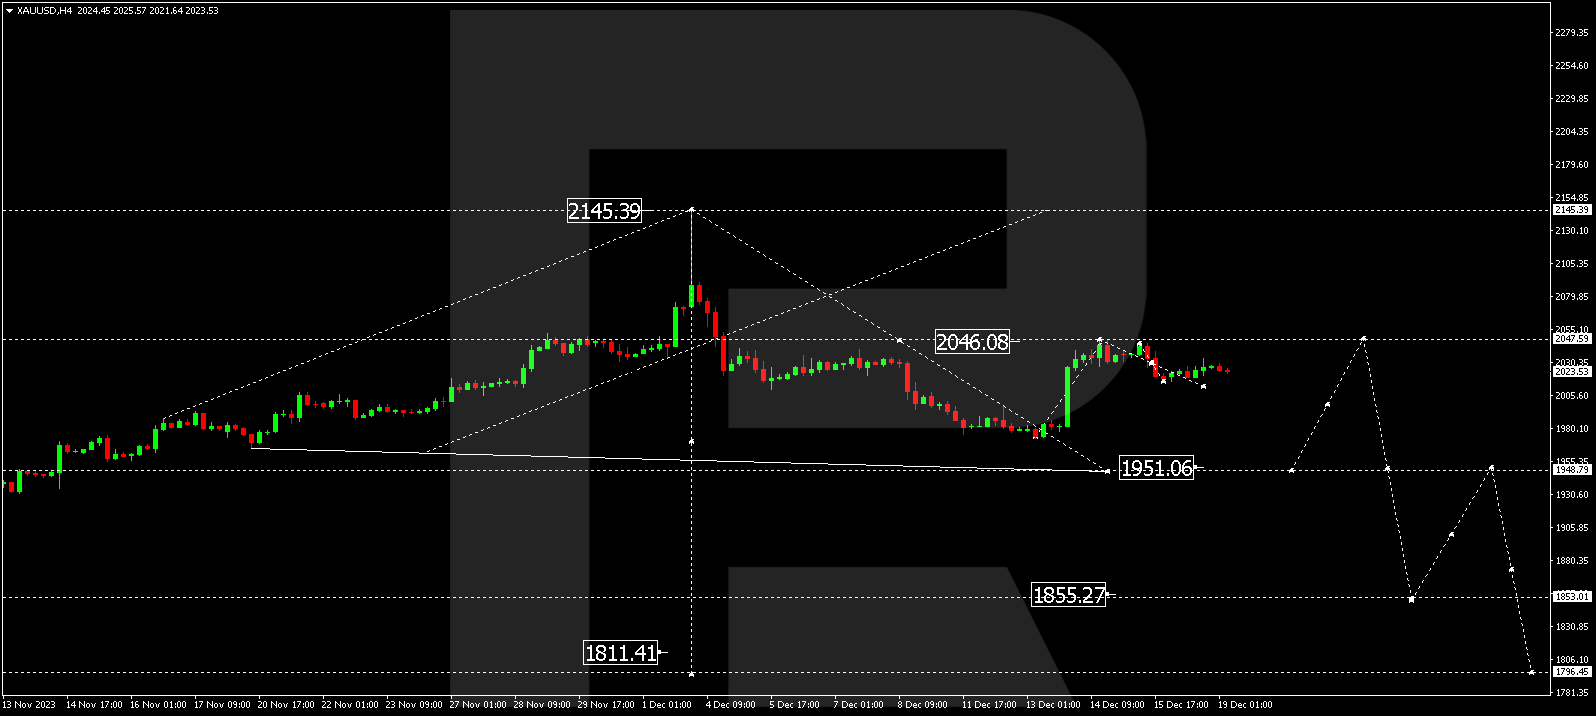 XAU/USD (Gold vs US Dollar)